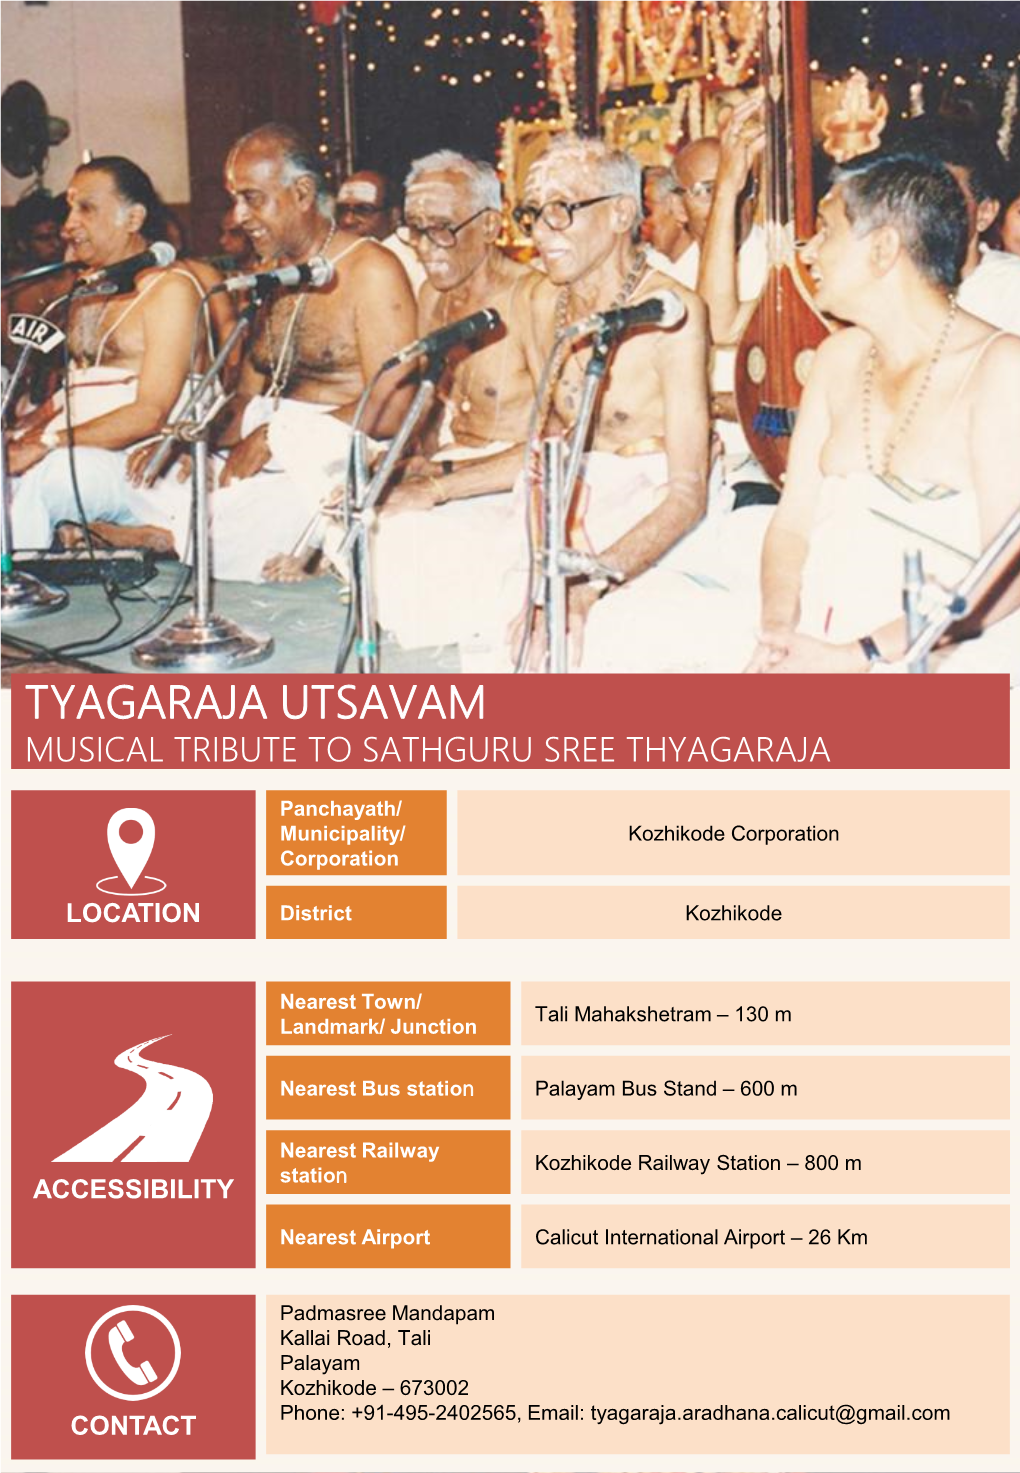 Tyagaraja Utsavam Musical Tribute to Sathguru Sree Thyagaraja